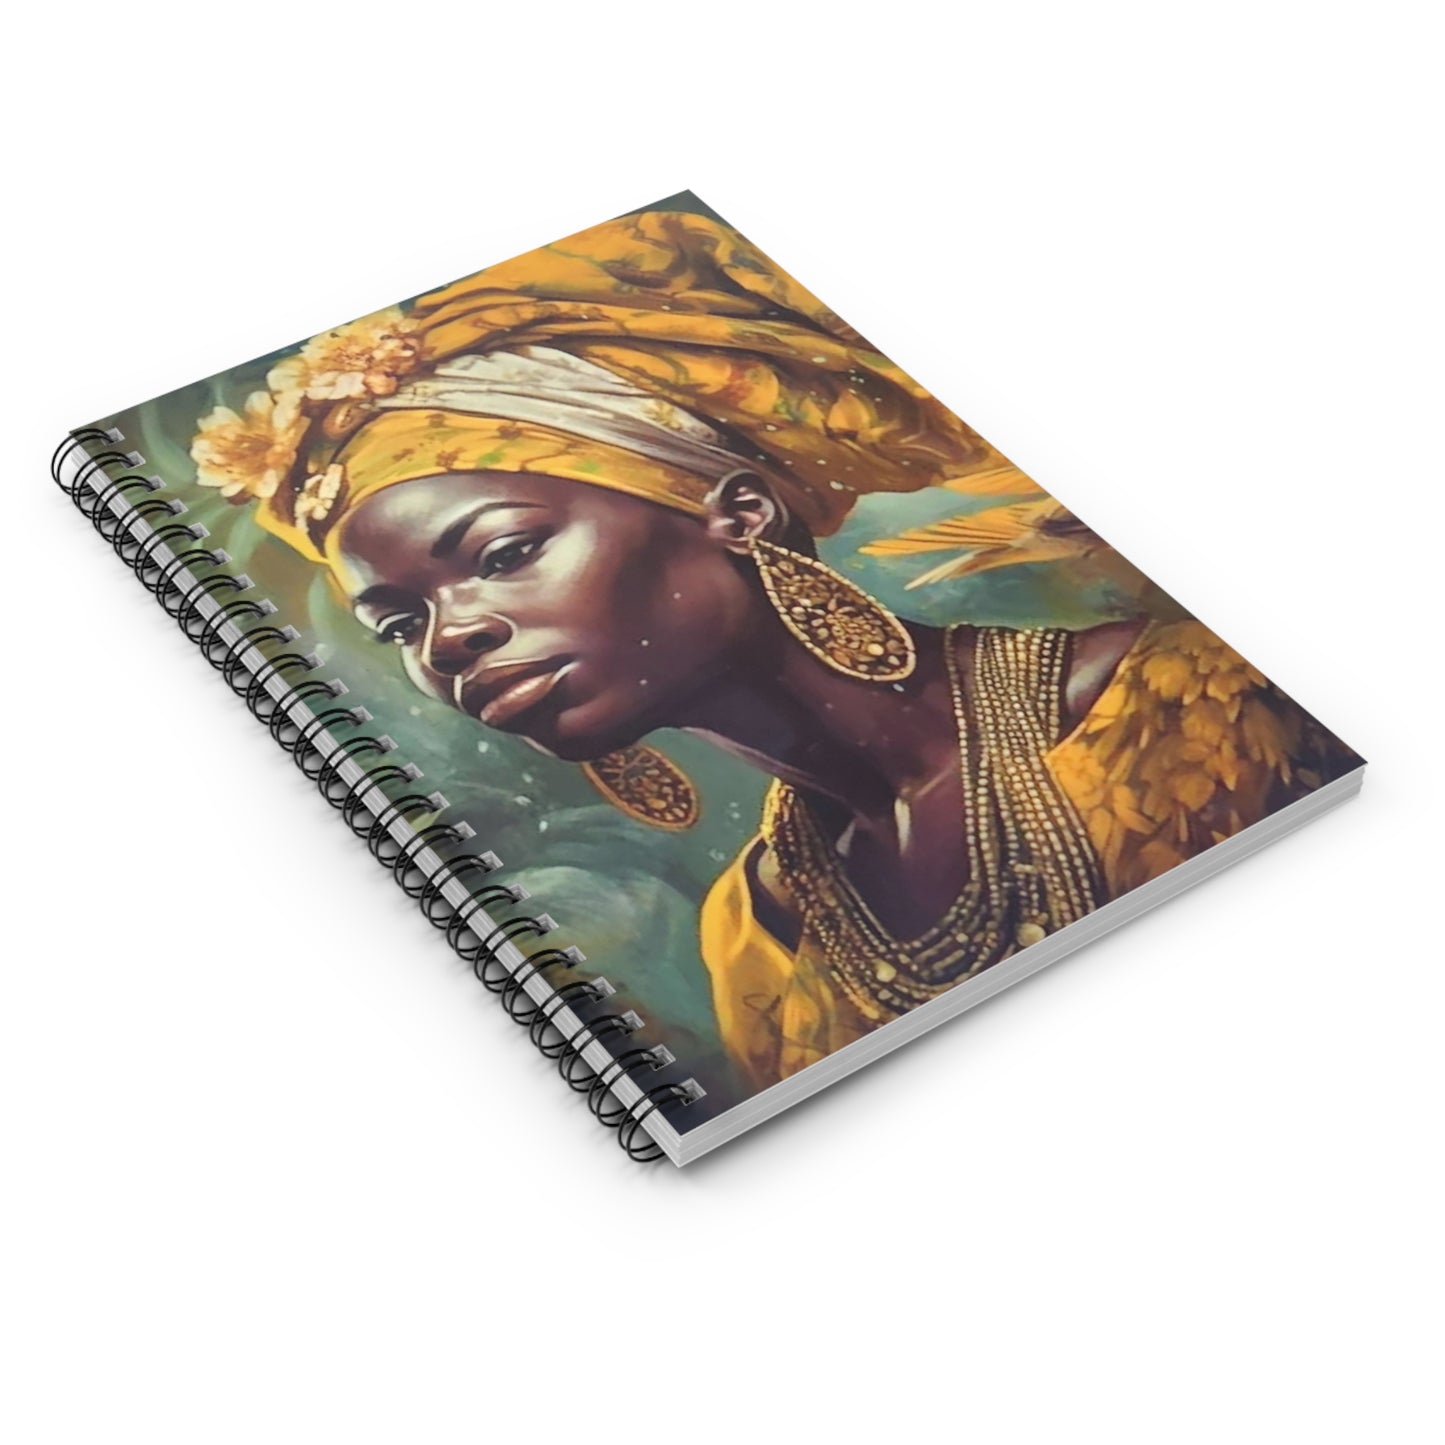 Osun Iyalode Spiral Notebook